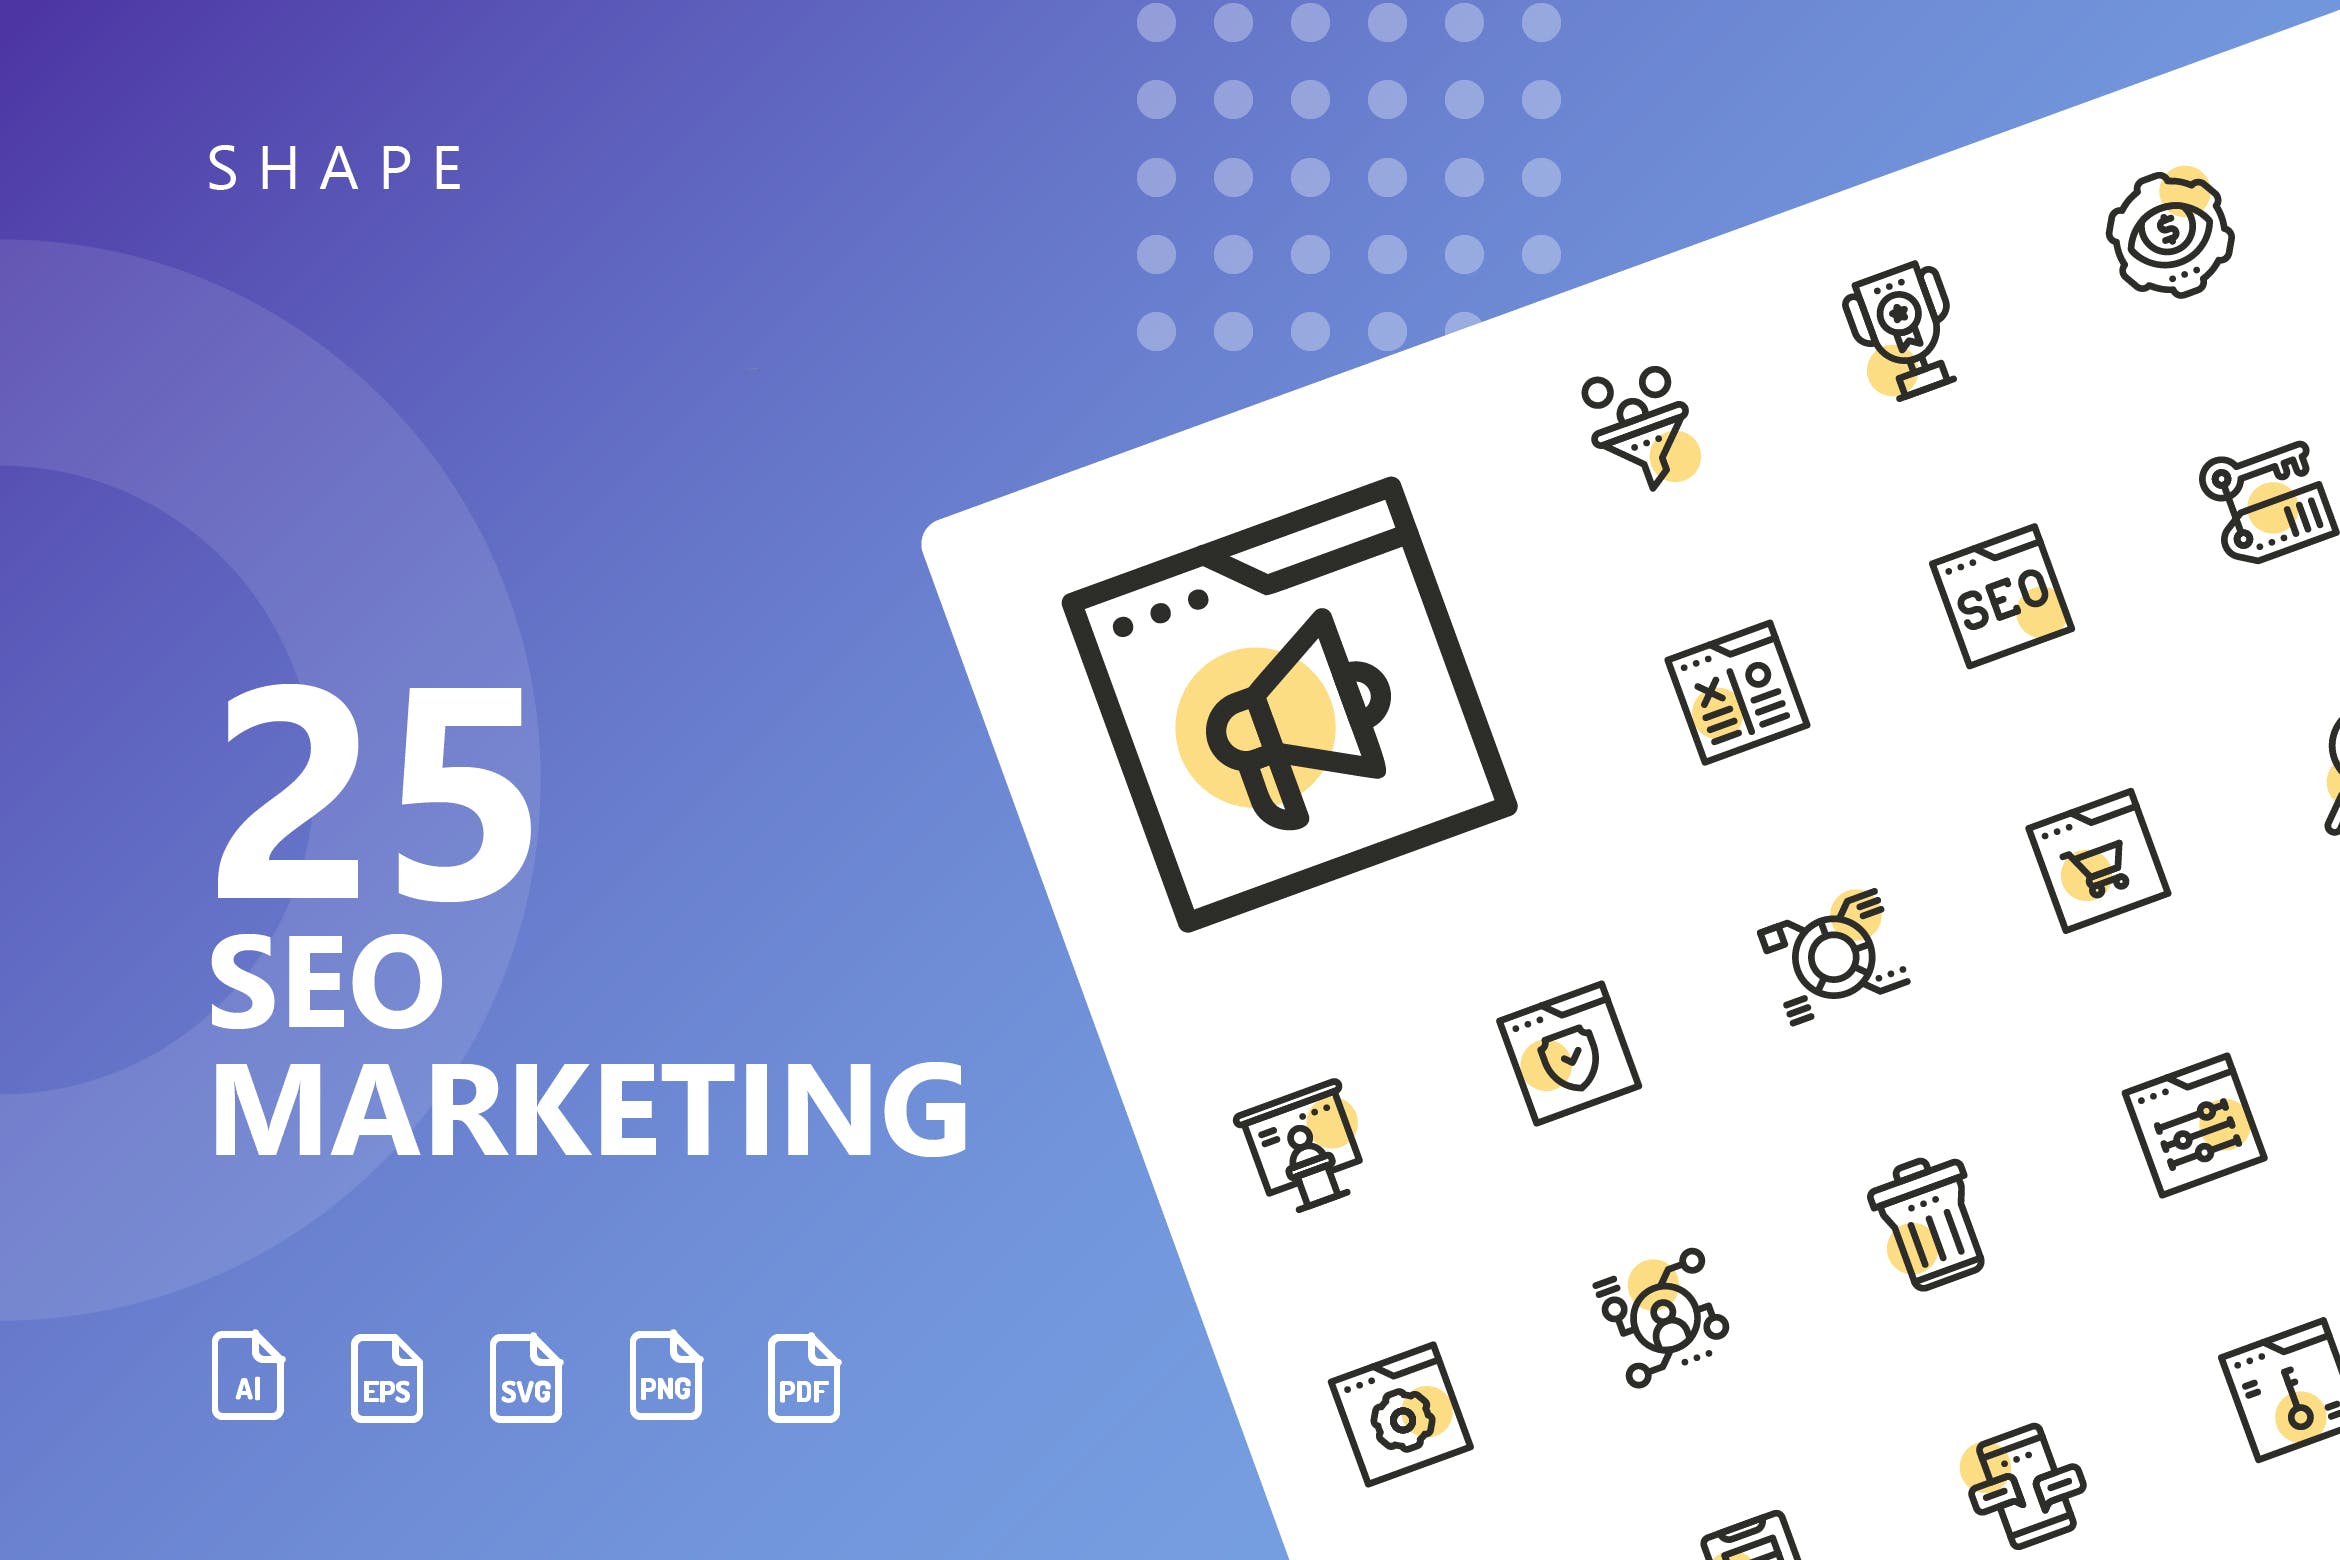 25枚SEO搜索引擎优化营销矢量圆点装饰素材库精选图标v2 SEO Marketing Shape Icons插图